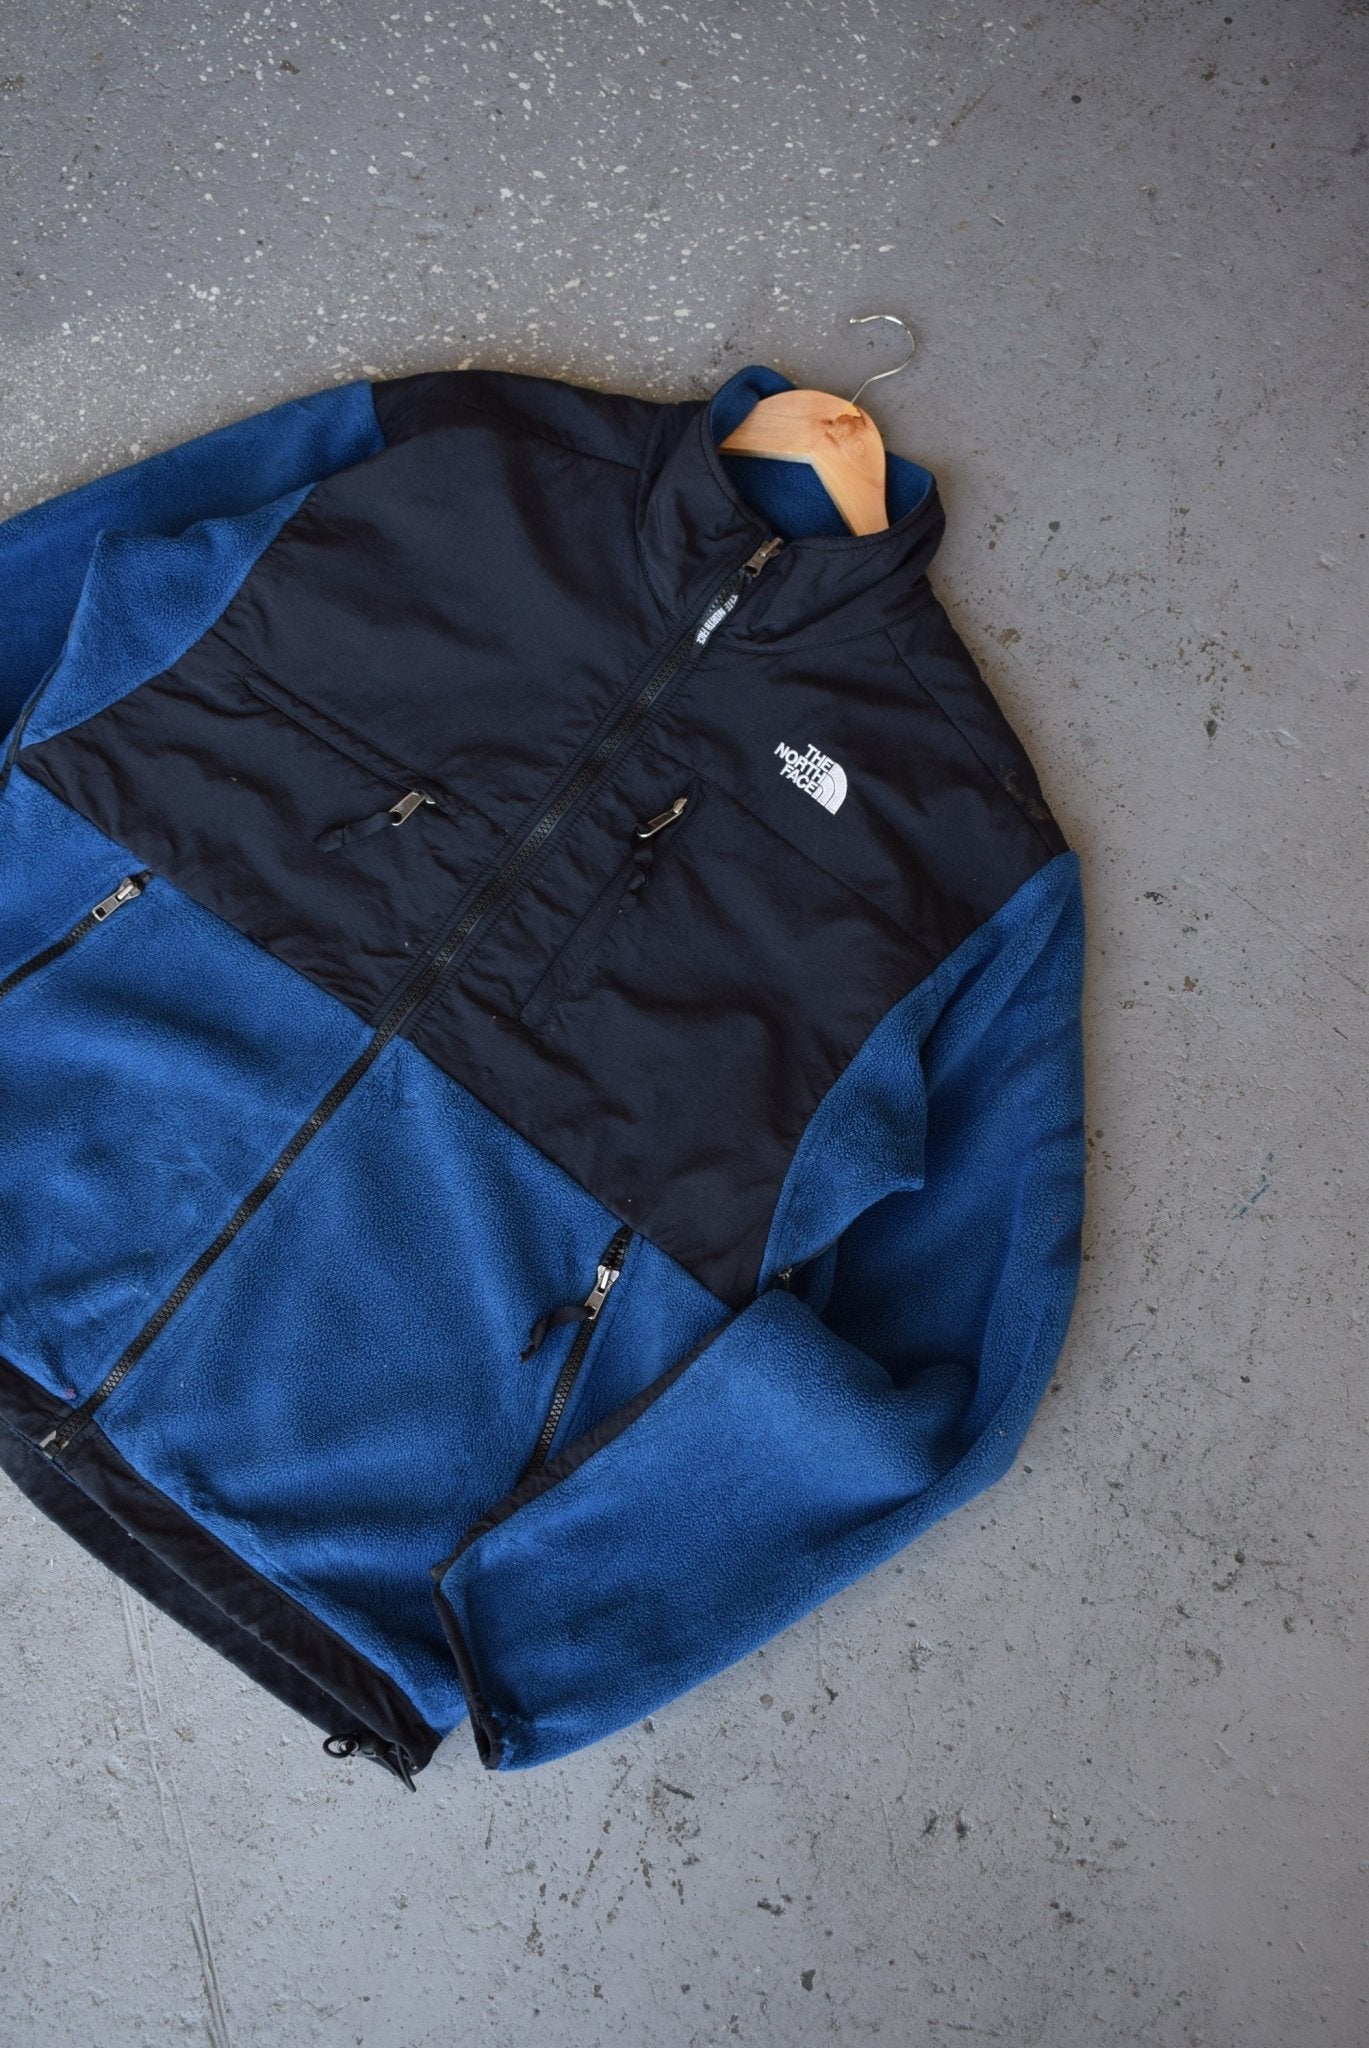 Vintage The North Face Fleece Jacket (M/L) - Retrospective Store